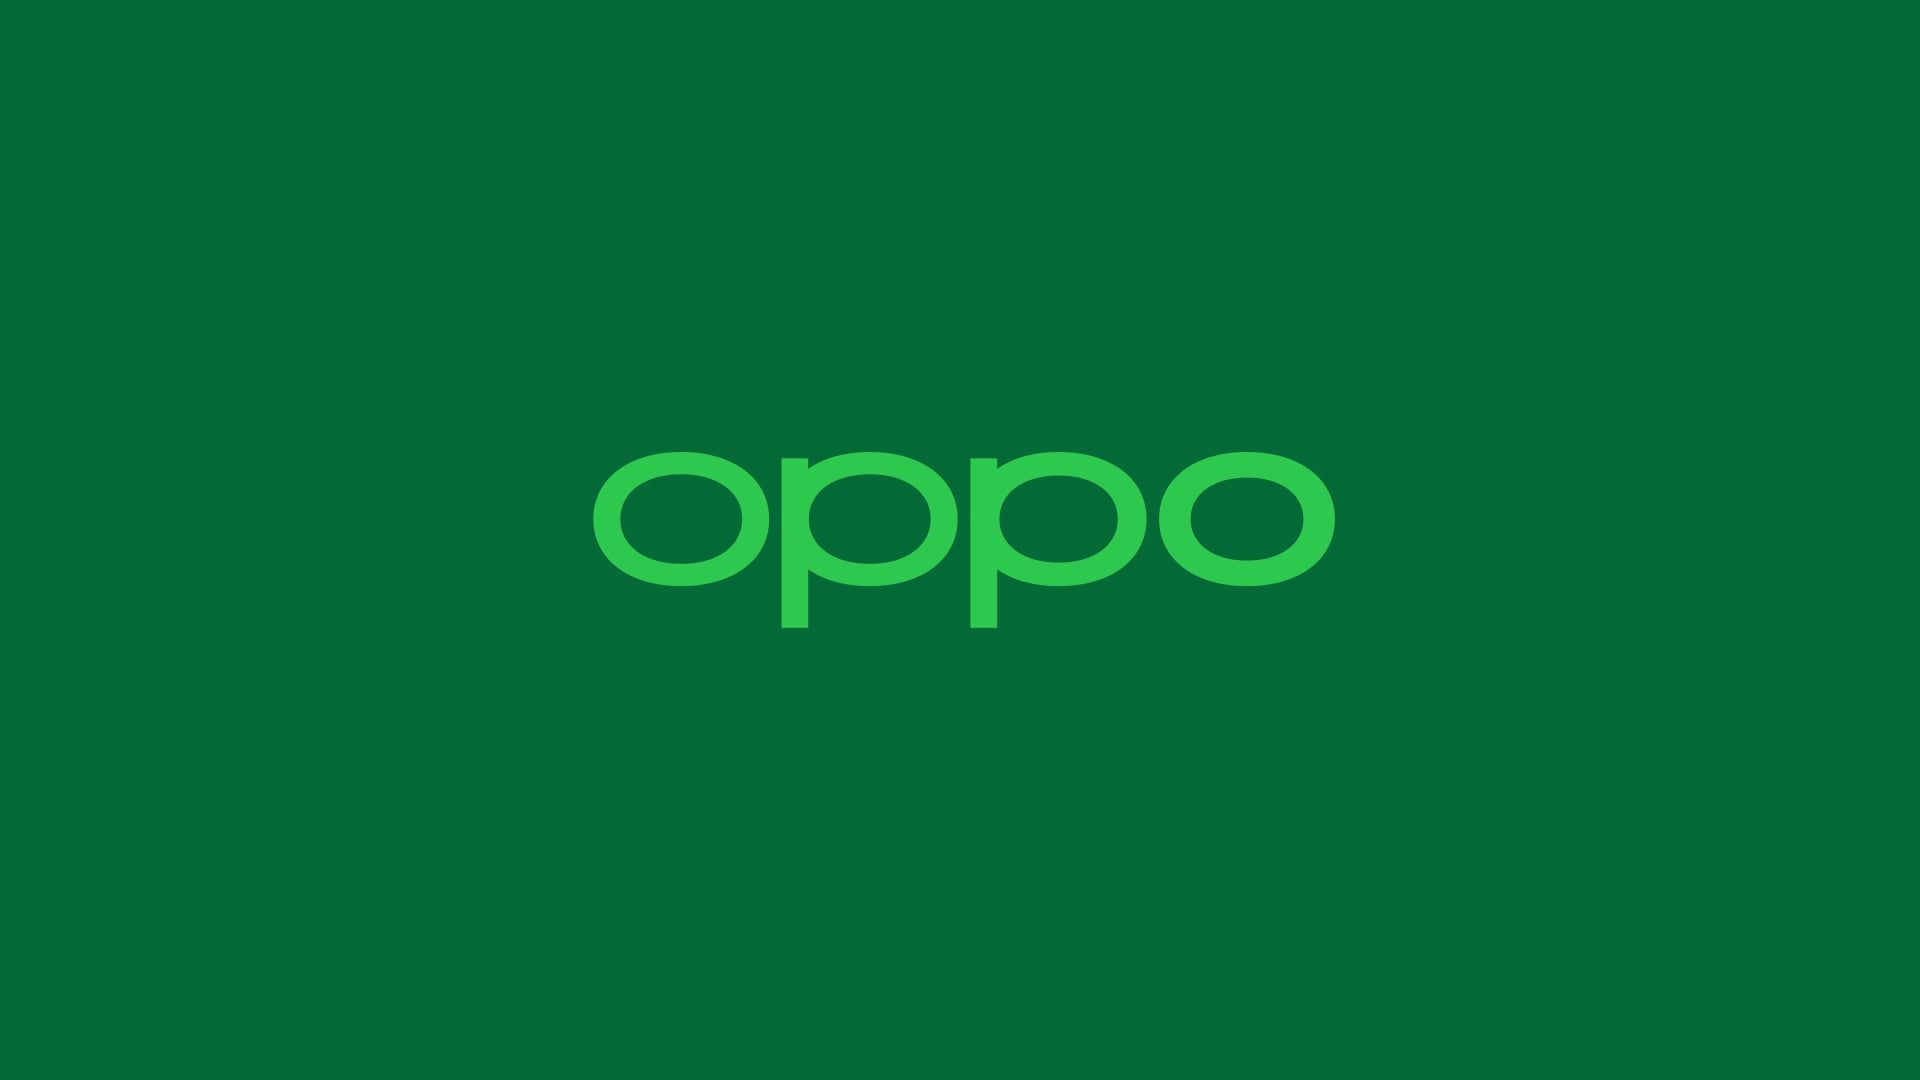 OPPO Logo. Logos, Tech company logos, Vimeo logo